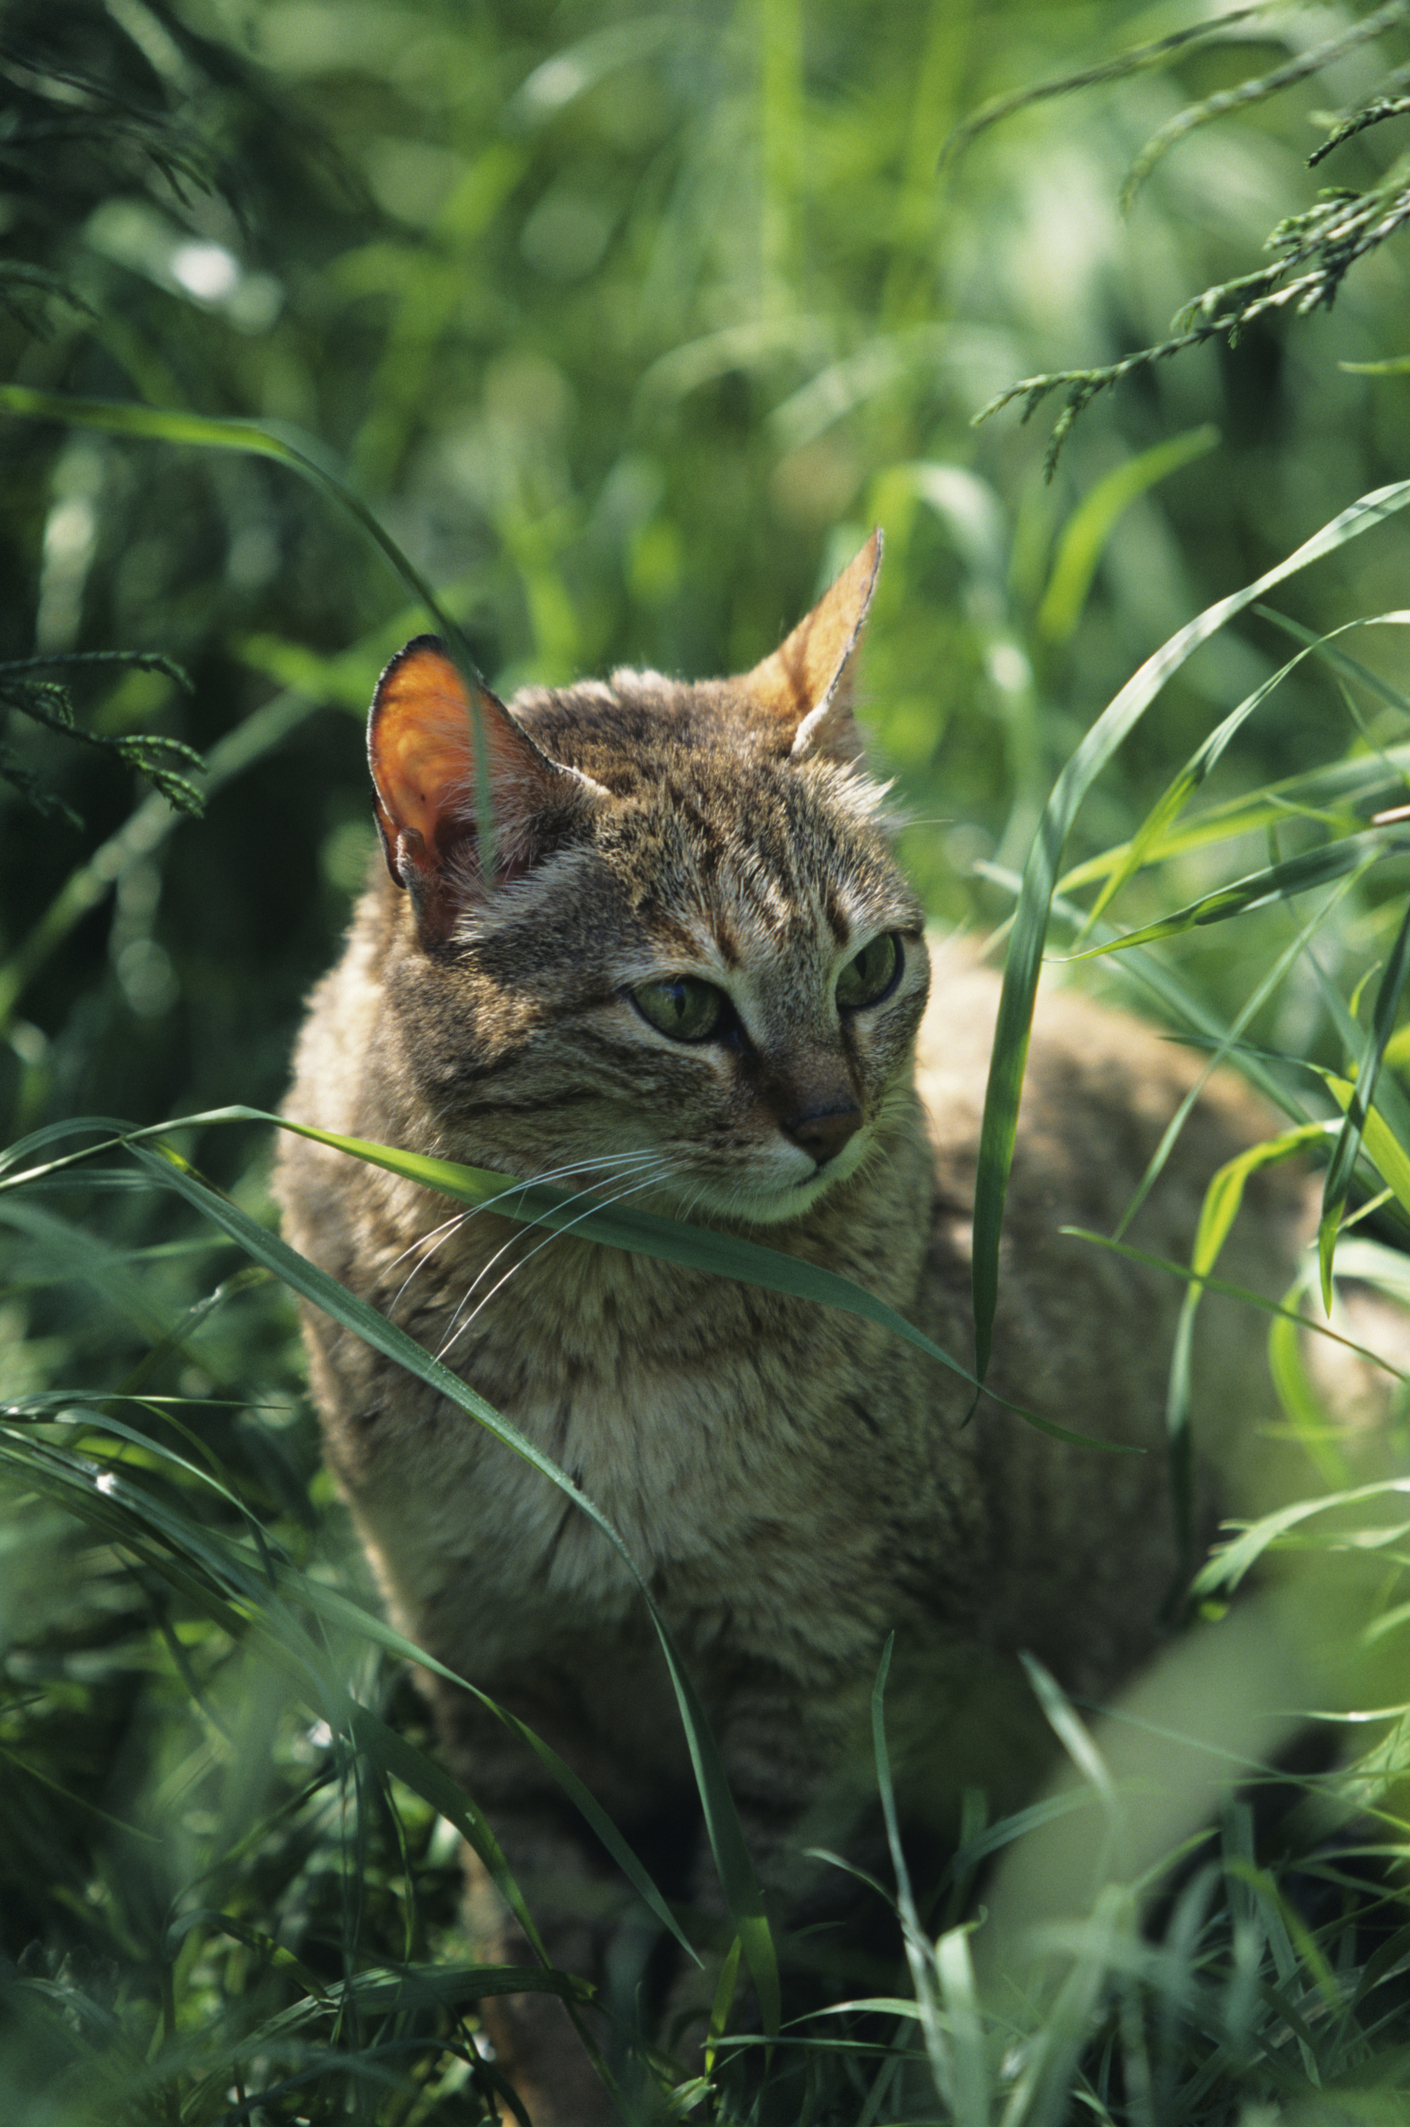 Арабската дива котка или дивата котка на Гордън, (Felis Silvestris Gordoni) обитава на Арабския полуостров. Прилича много на обикновената домашна котка. Ендемична е за северен Оман и Обединените арабски емирства. Типичното ѝ местообитание са полупустинни скалисти райони. Мъжките обикновено маркират по-голяма територия. Арабската дива котка е нощен хищник. Обикновено има по няколко пещери, скални ниши, кухи дървета или празни лисичи дупки на територията си, където се крие при опасност и си почива през деня.